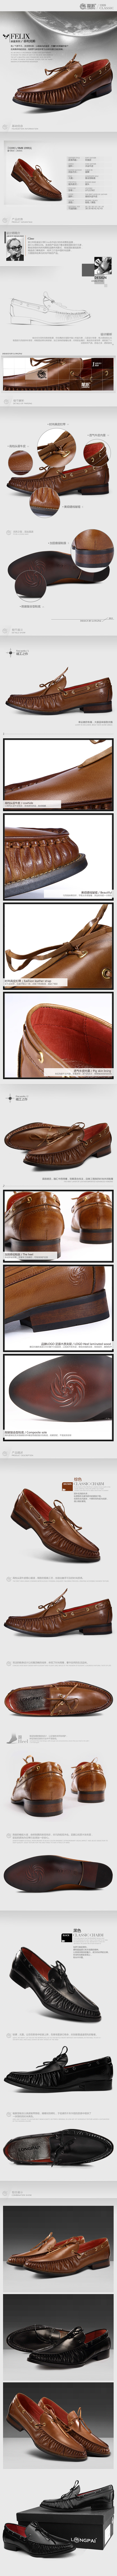 淘宝素材PSD高清分层描述模板皮鞋模板